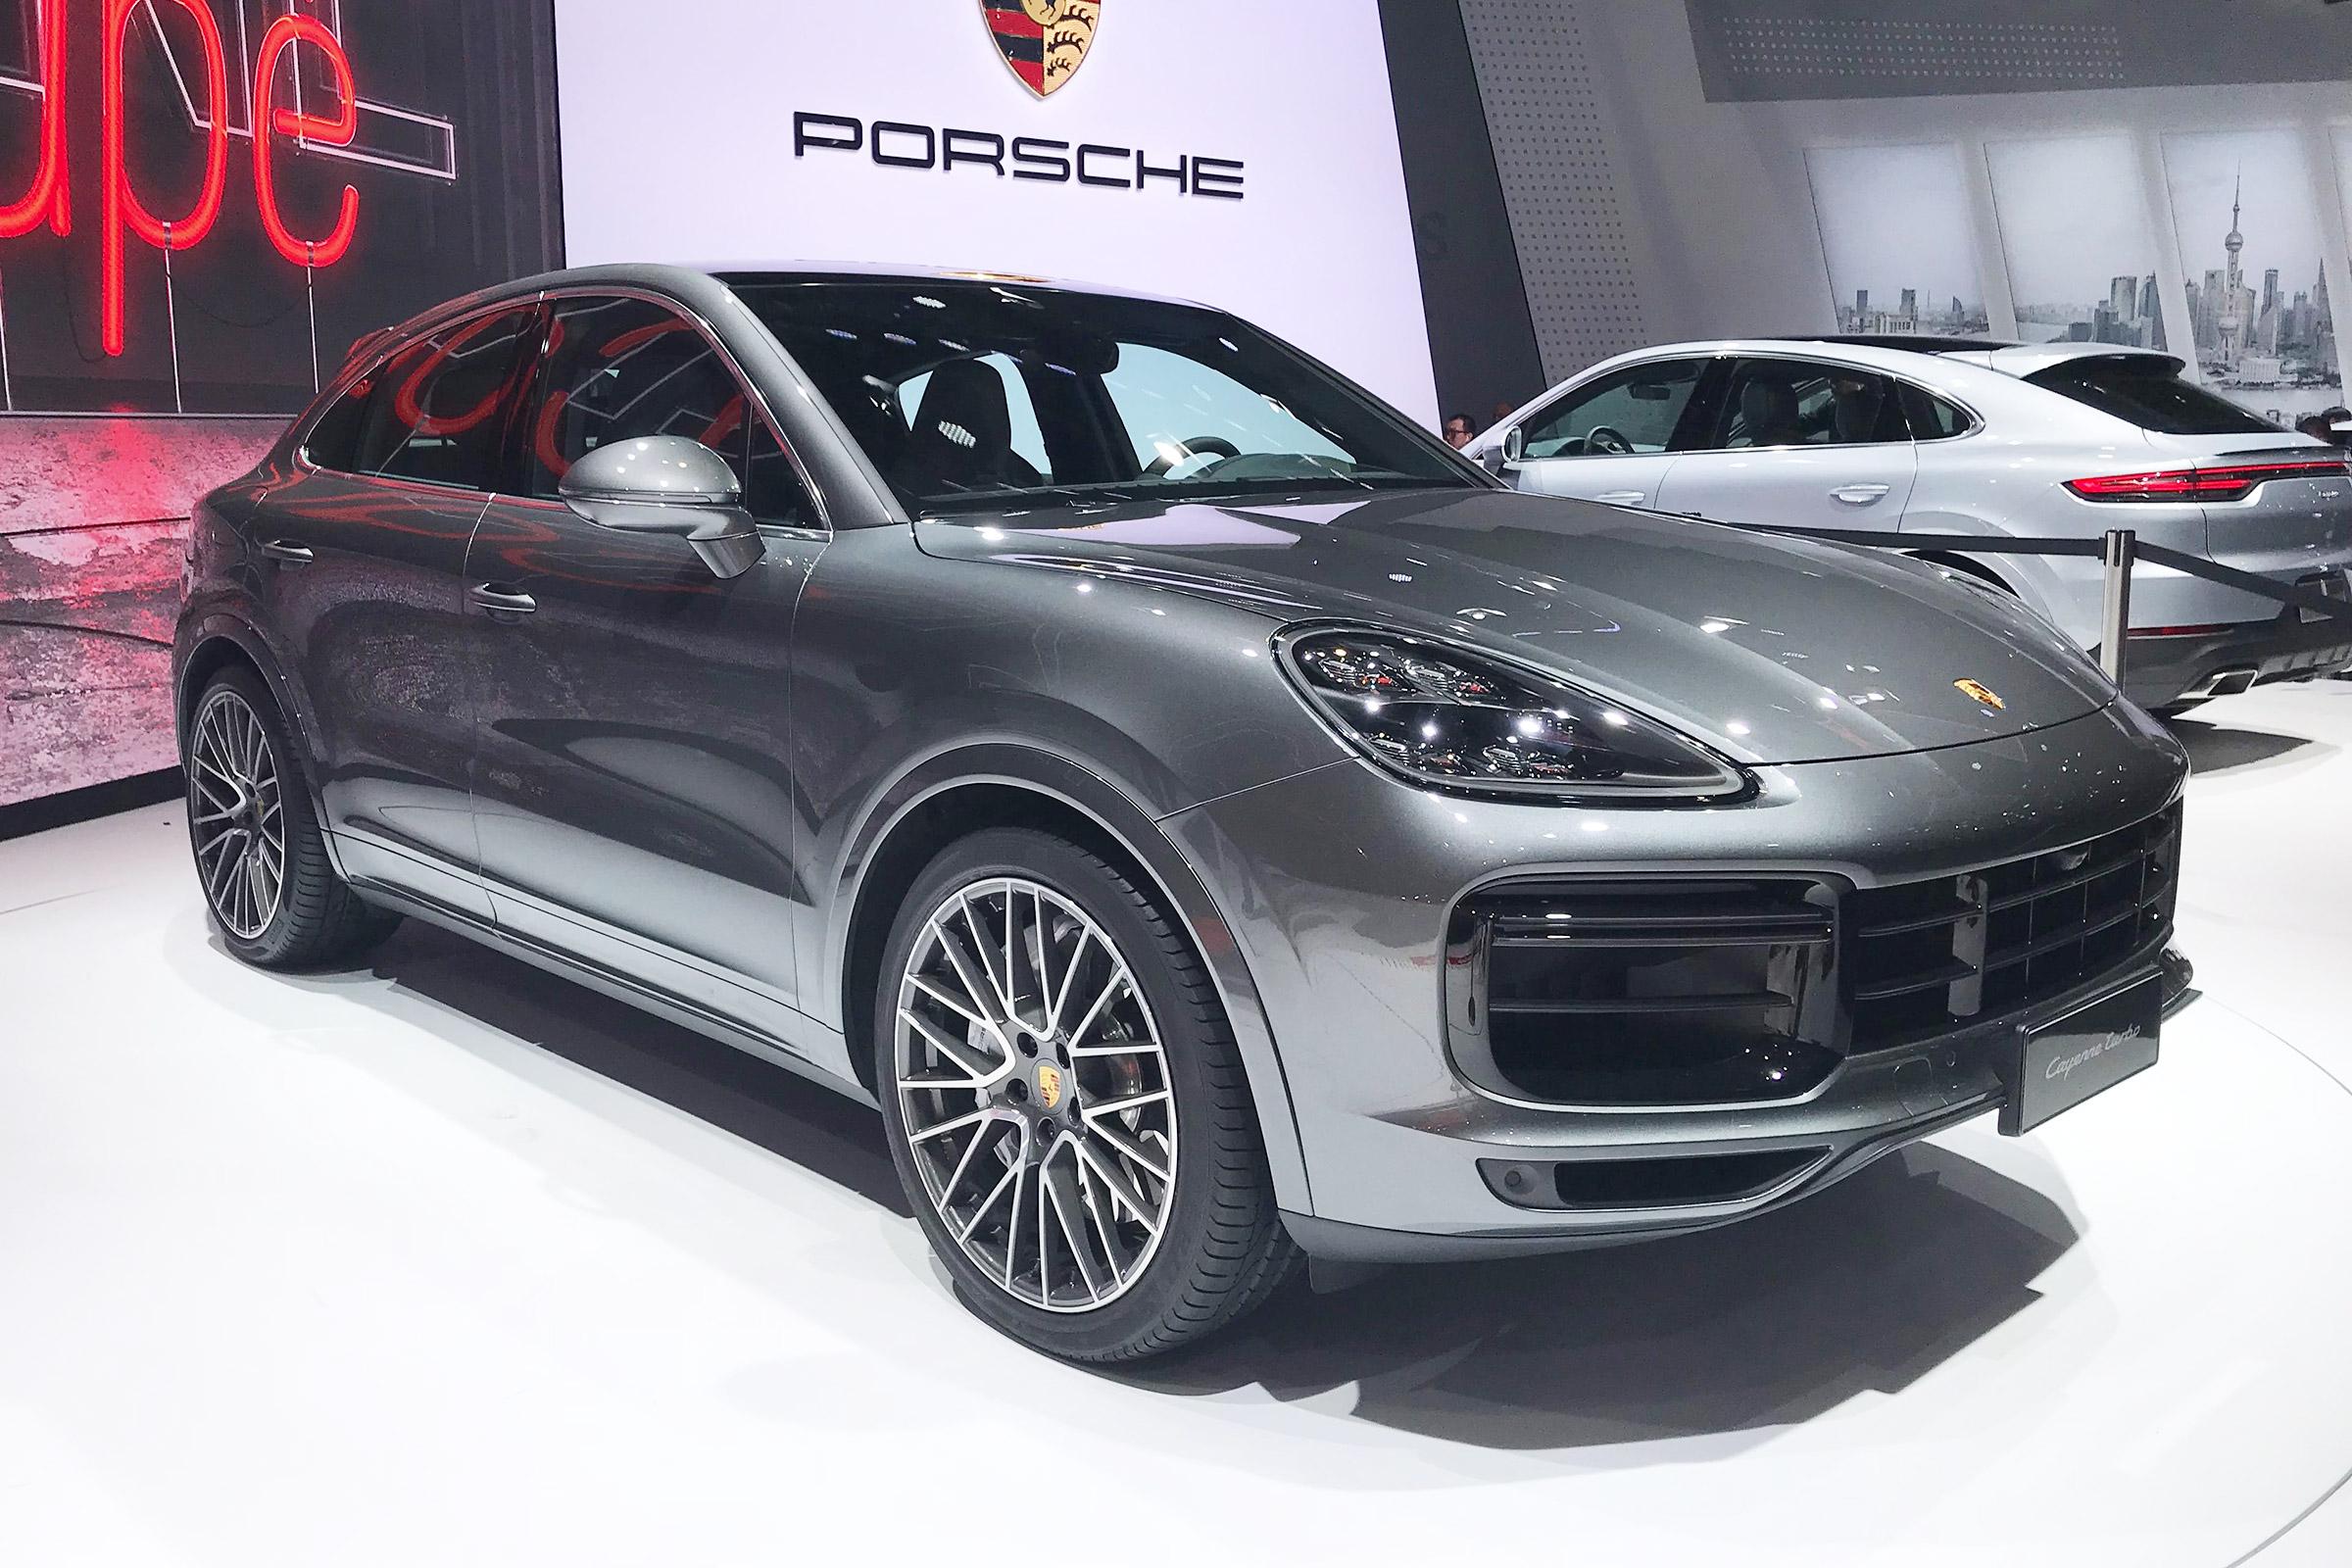 New Porsche Cayenne Coupe makes public Shanghai debut